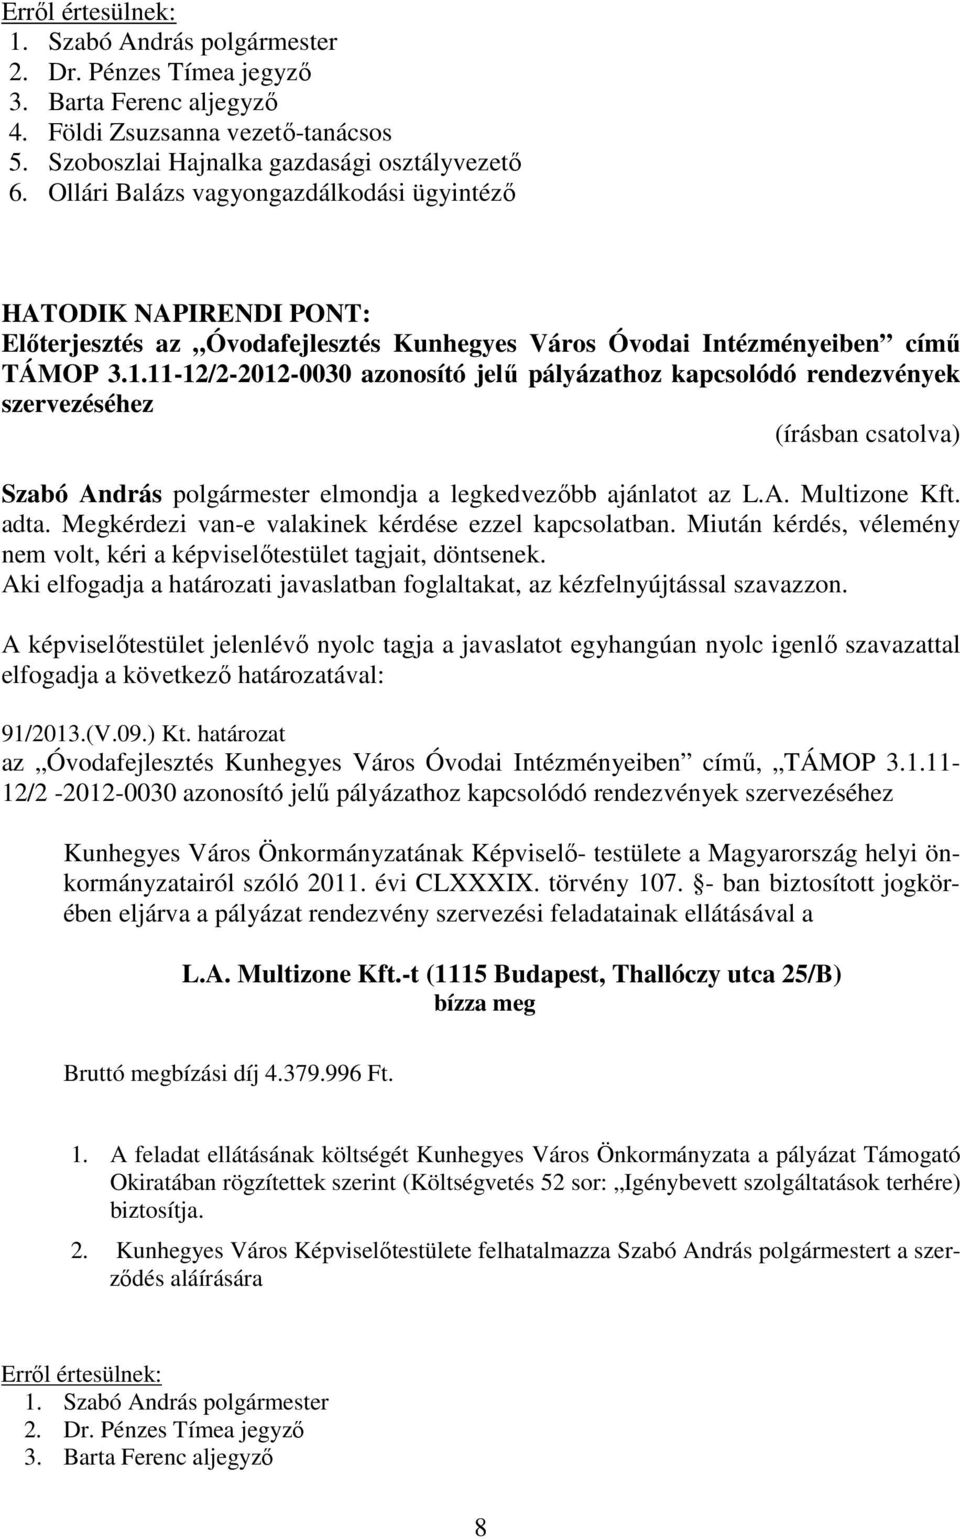 11-12/2-2012-0030 azonosító jelű pályázathoz kapcsolódó rendezvények szervezéséhez Szabó András polgármester elmondja a legkedvezőbb ajánlatot az L.A. Multizone Kft. adta.